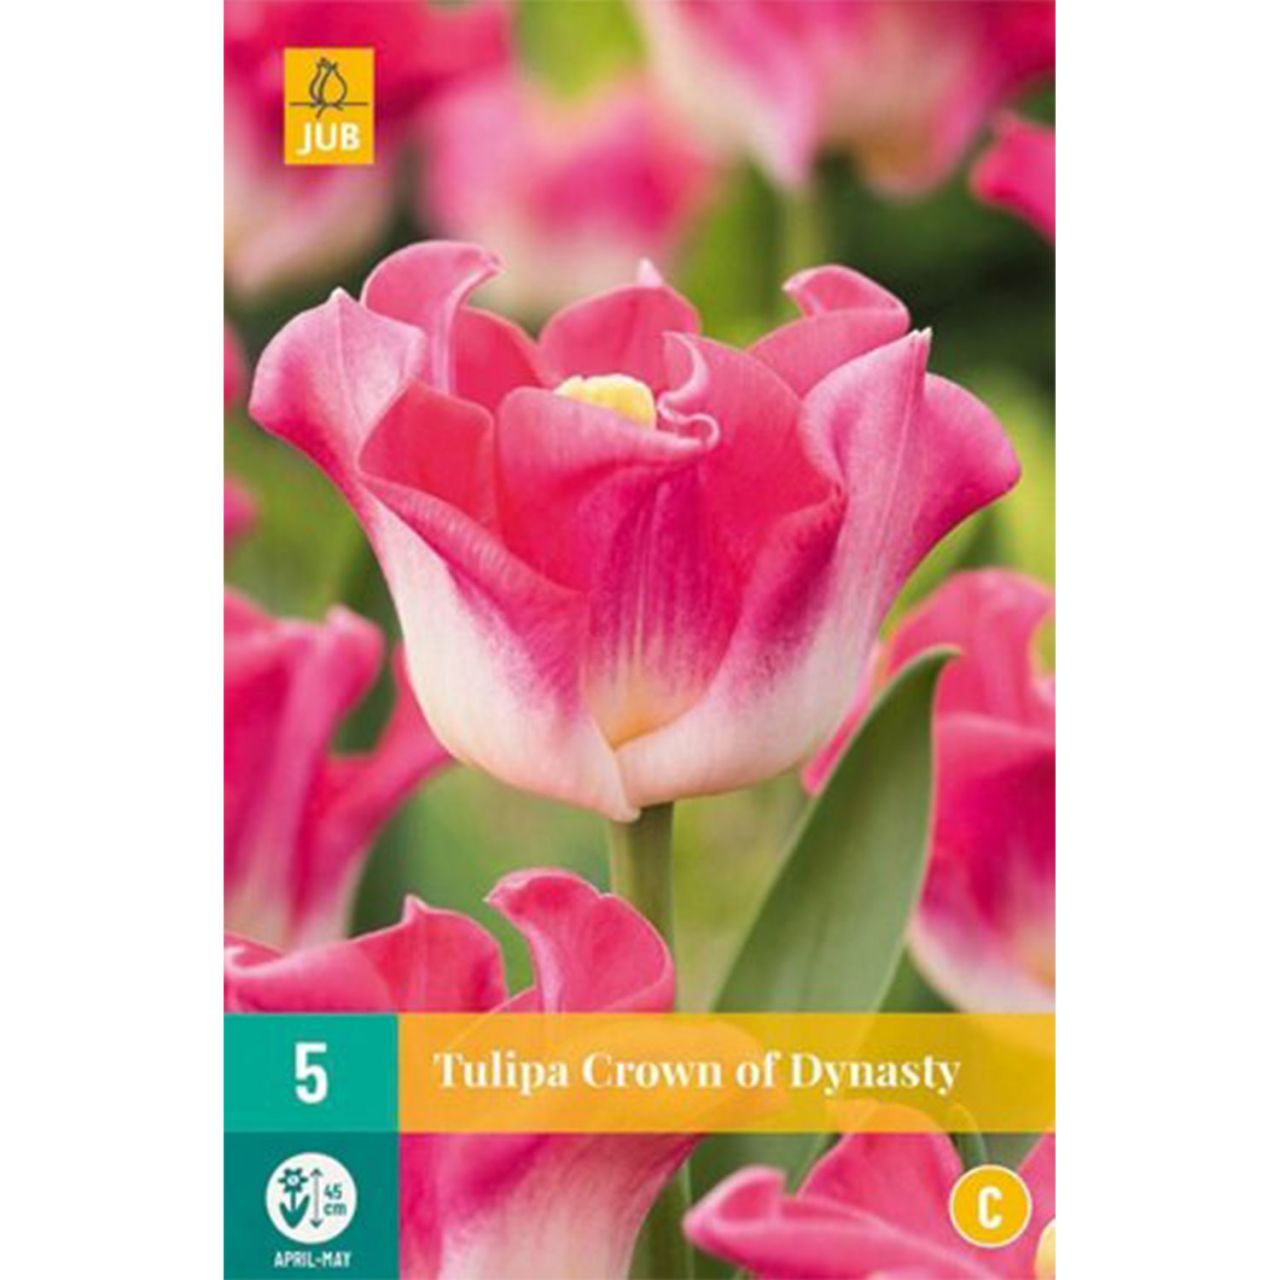 Kategorie <b>Herbst-Blumenzwiebeln </b> - Coronet-Tulpe 'Crown of Dynasty' - 5 Stück - Tulipa 'Crown of Dynasty'